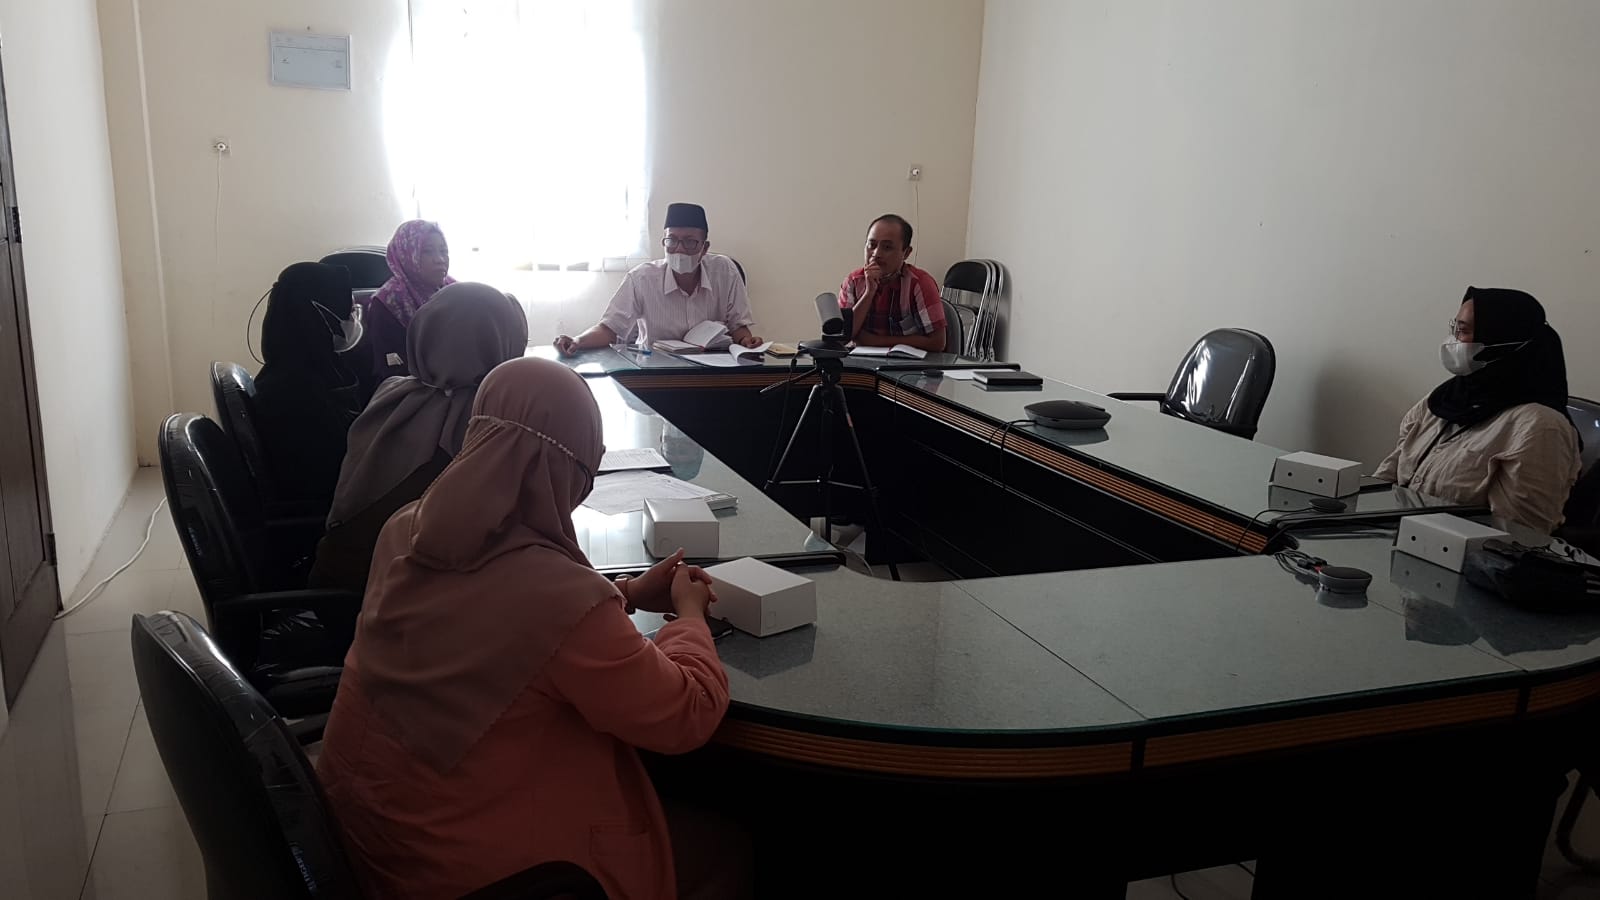 Laporan Hasil Evaluasi atas Penilaian Mandiri Kapabilitas APIP pada Inspektorat Daerah Kabupaten Lombok Timur oleh Tim Evaluator BPKP Provinsi NTB